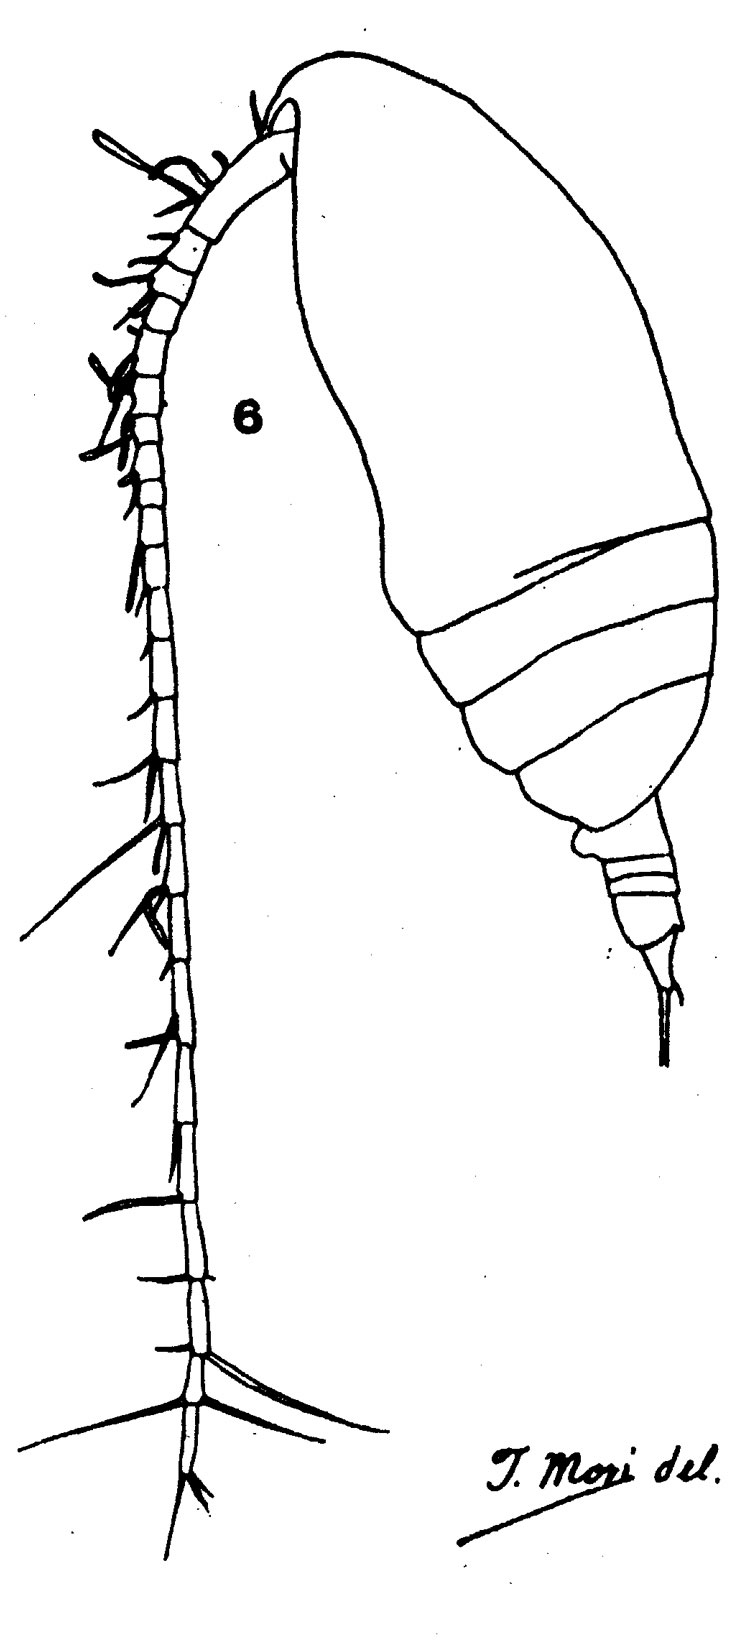 Espèce Acrocalanus longicornis - Planche 8 de figures morphologiques